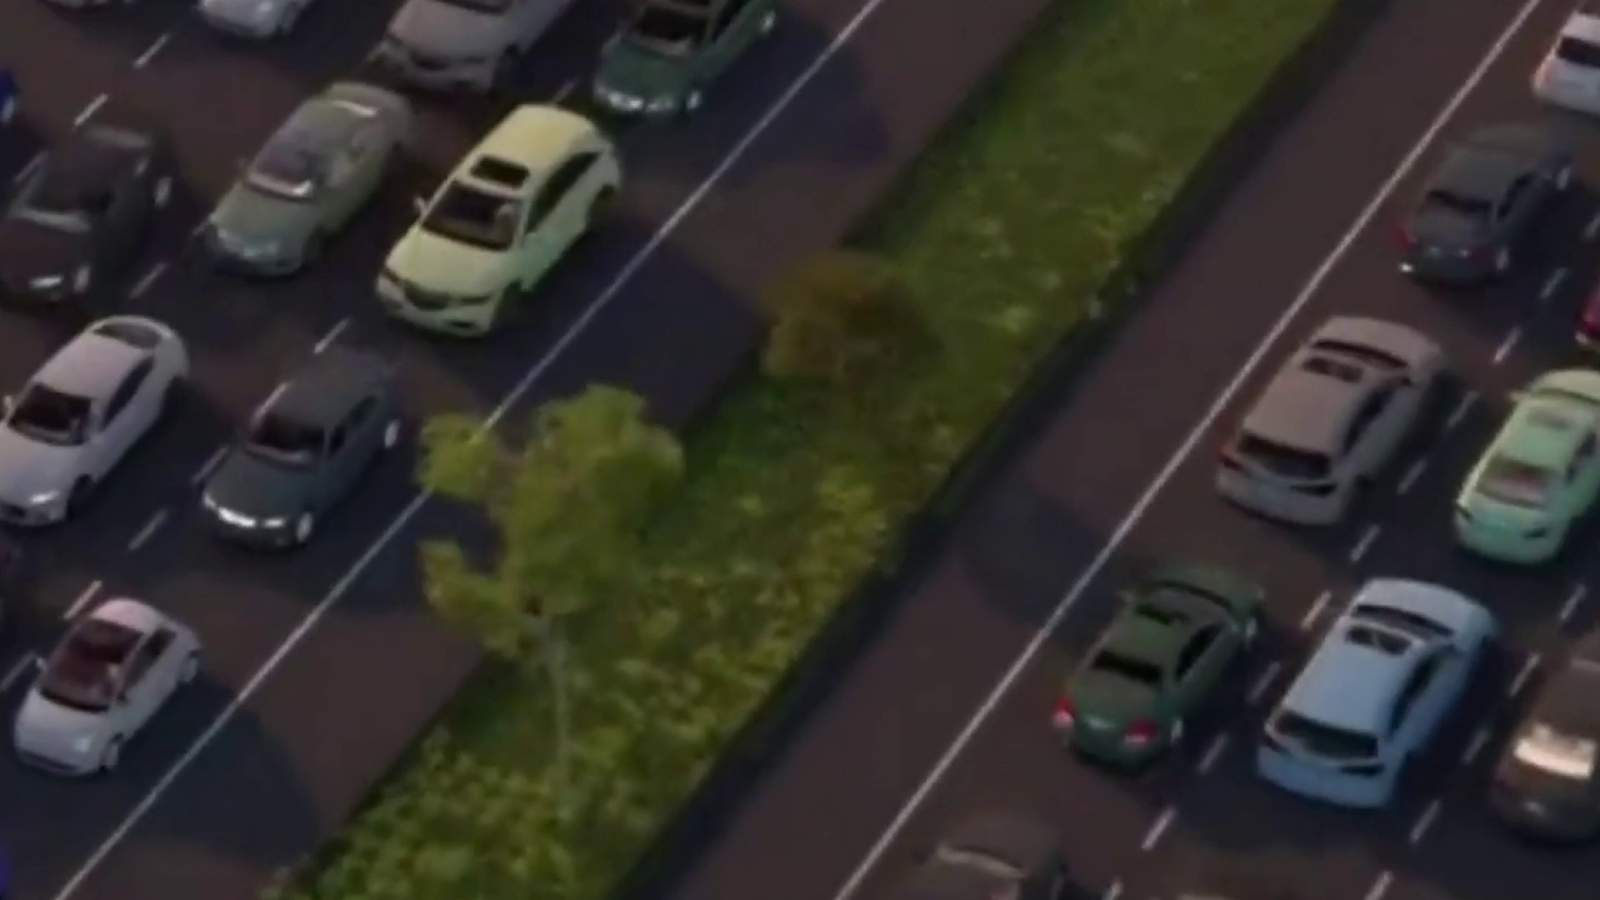 Michigan plans dedicated road lanes for autonomous vehicles